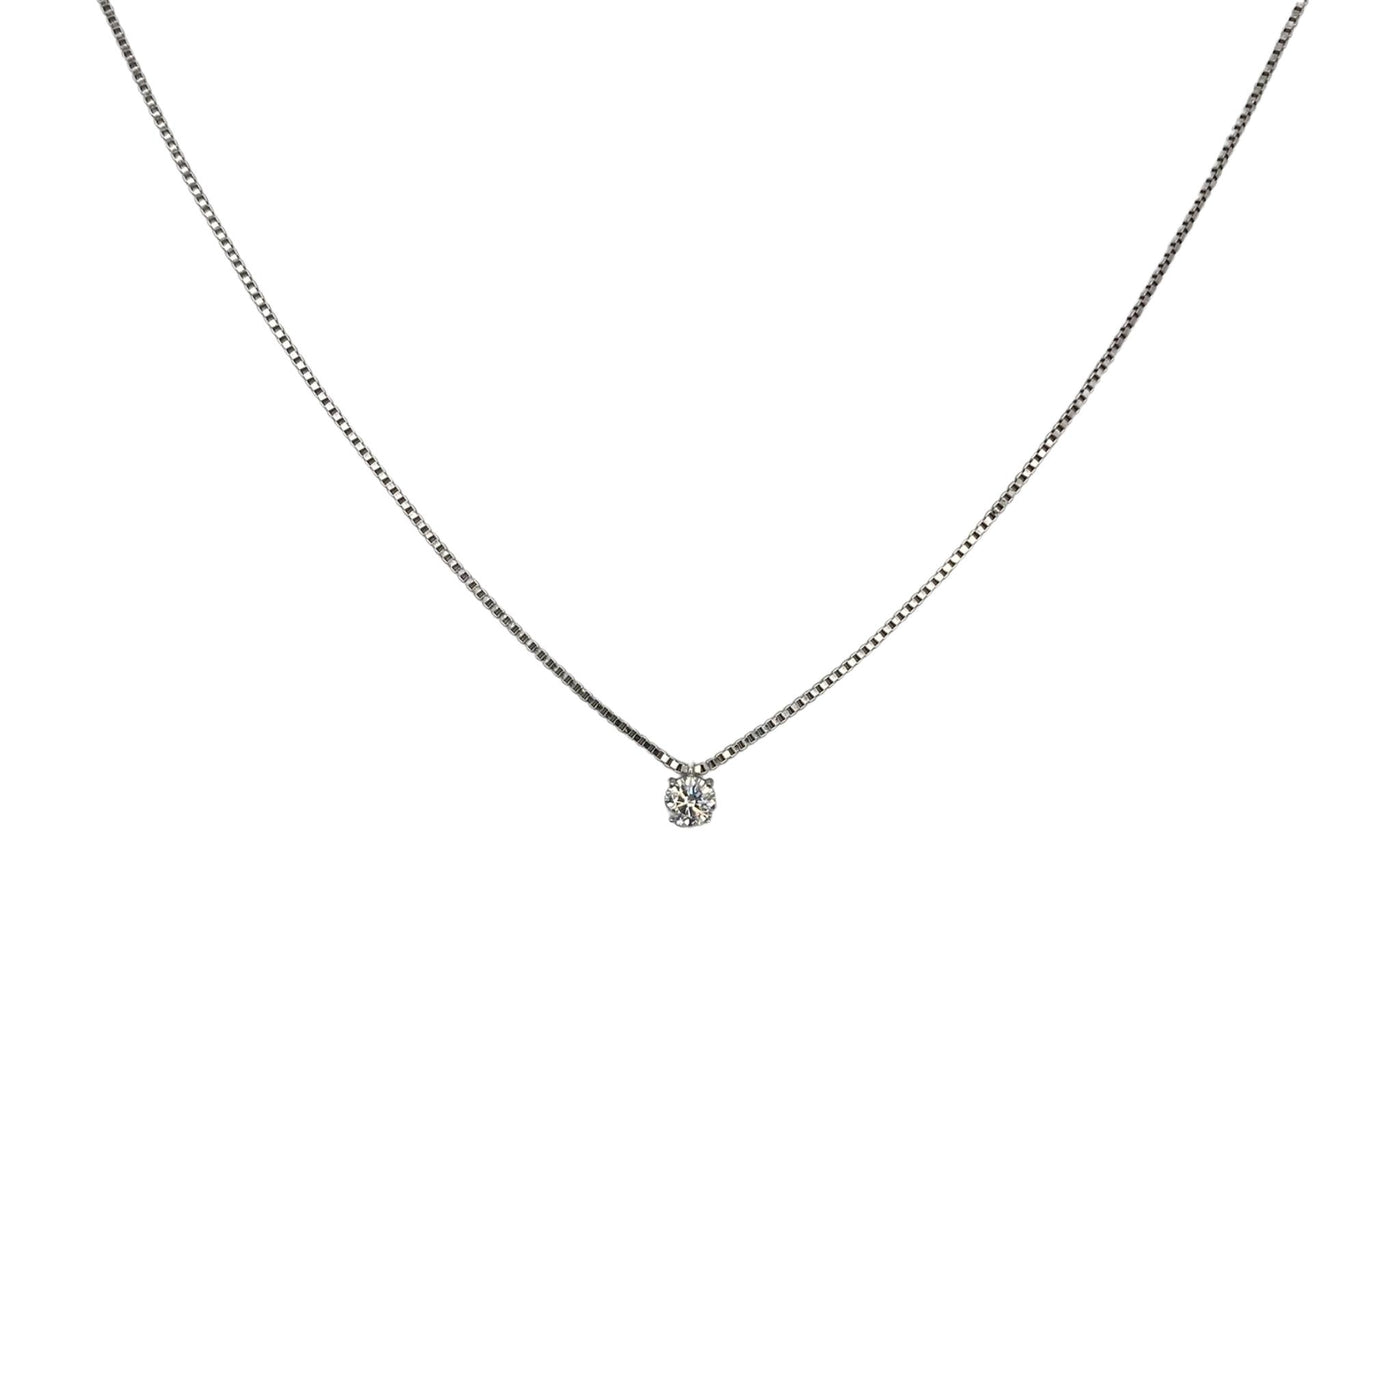 Silver white solitaraire necklace